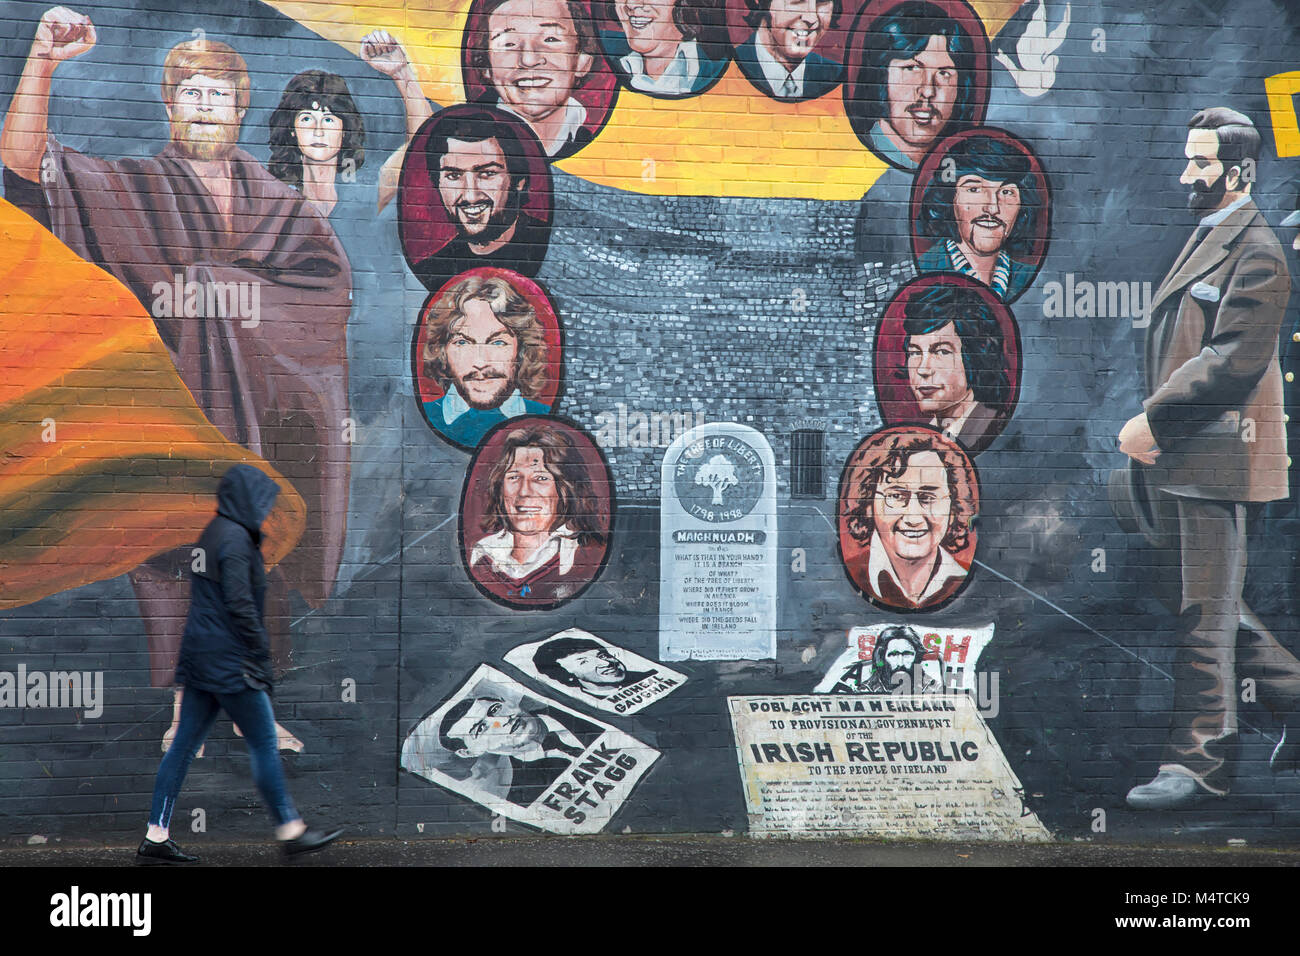 Fresque républicaine commémorant la grève de la faim, Falls Road, Belfast, pays d'Antrim, Irlande du Nord. Banque D'Images